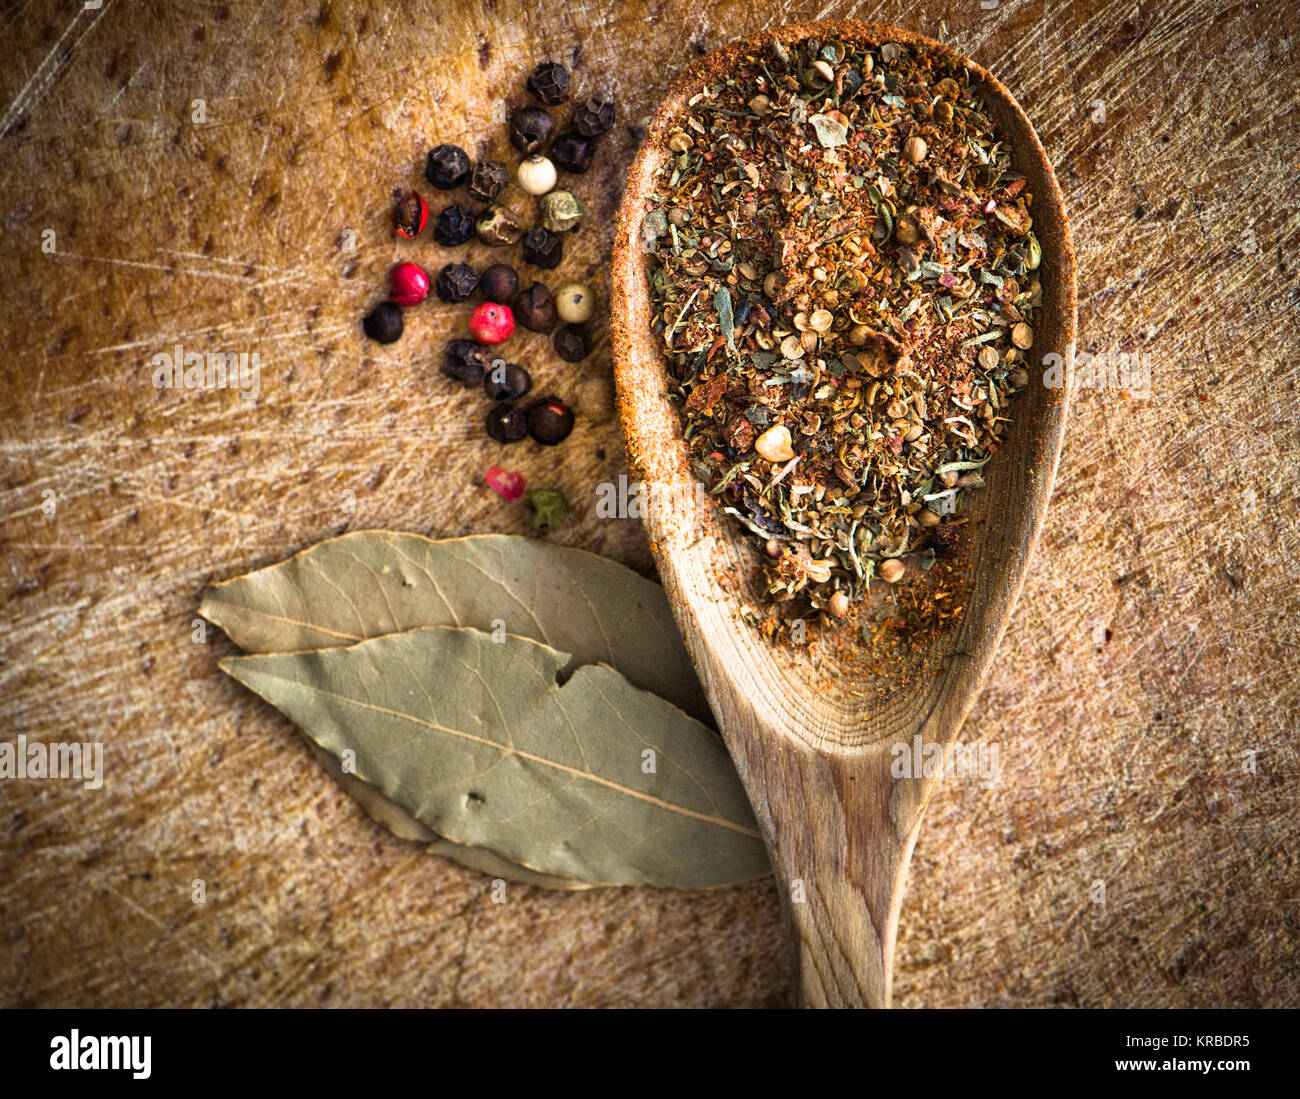 https://c8.alamy.com/comp/KRBDR5/spices-in-a-spoon-KRBDR5.jpg